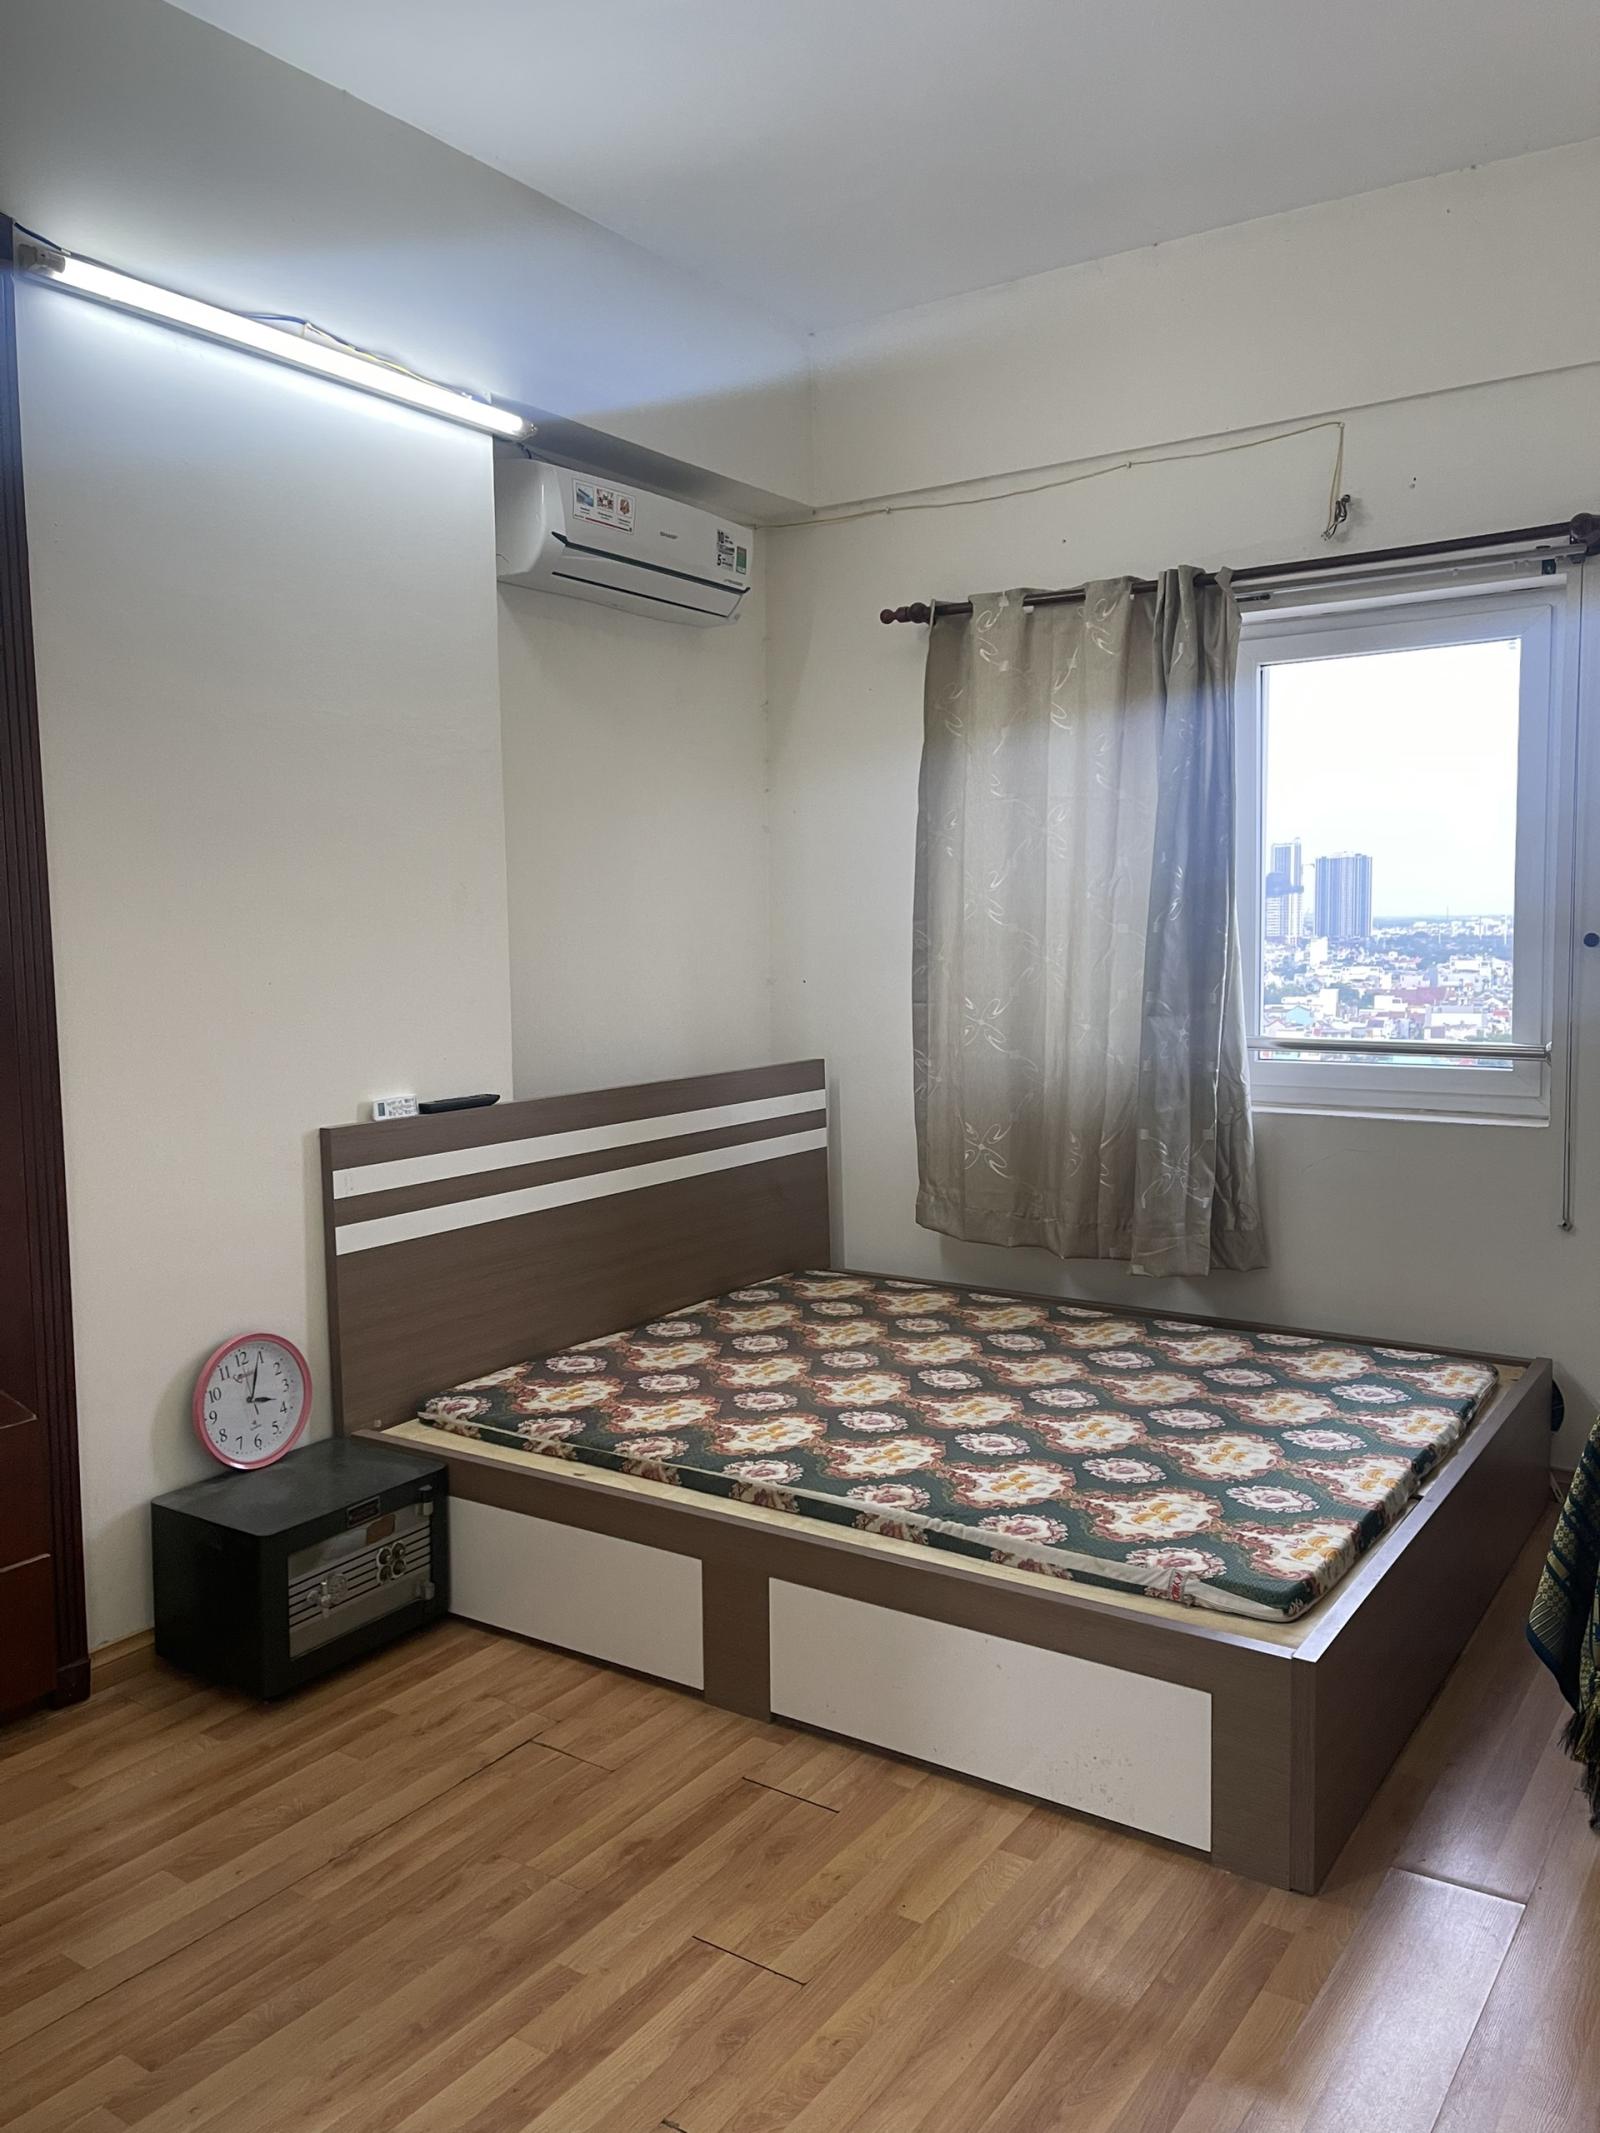 Cần cho thuê căn hộ Minh Thành Quận 7 có nội thất và ban công giá 9.5tr/tháng.LH 0909802822 Trân